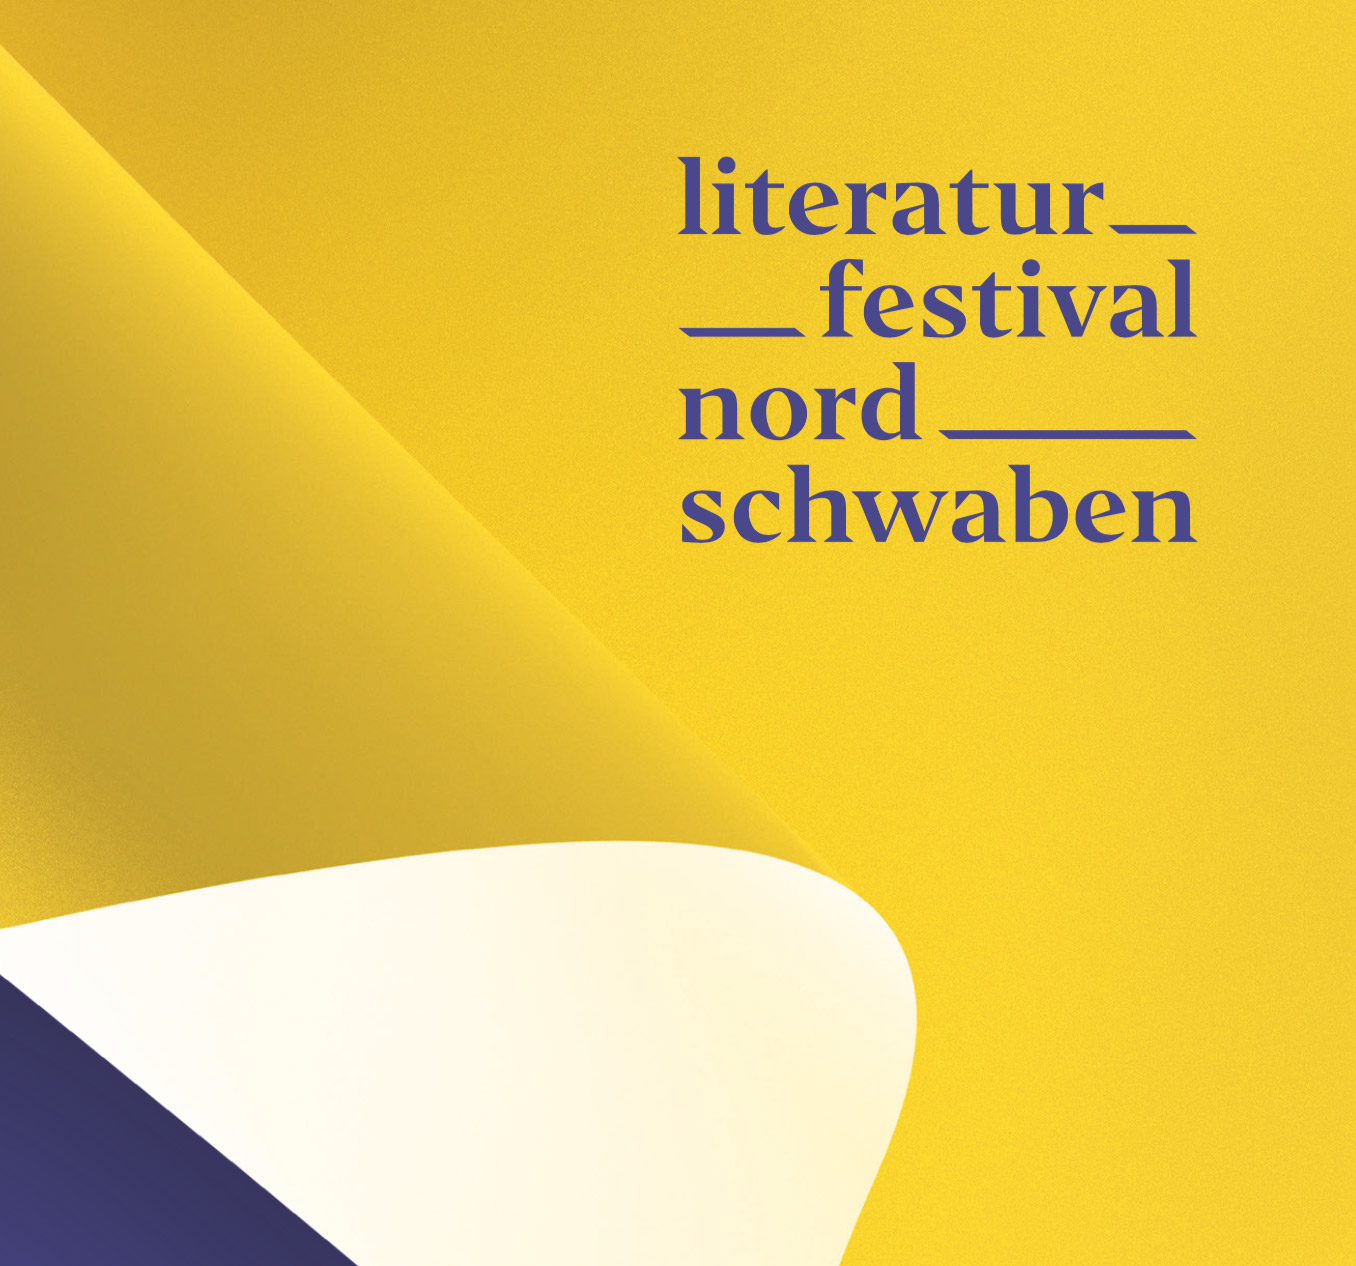 (c) Literaturfestival-nordschwaben.de